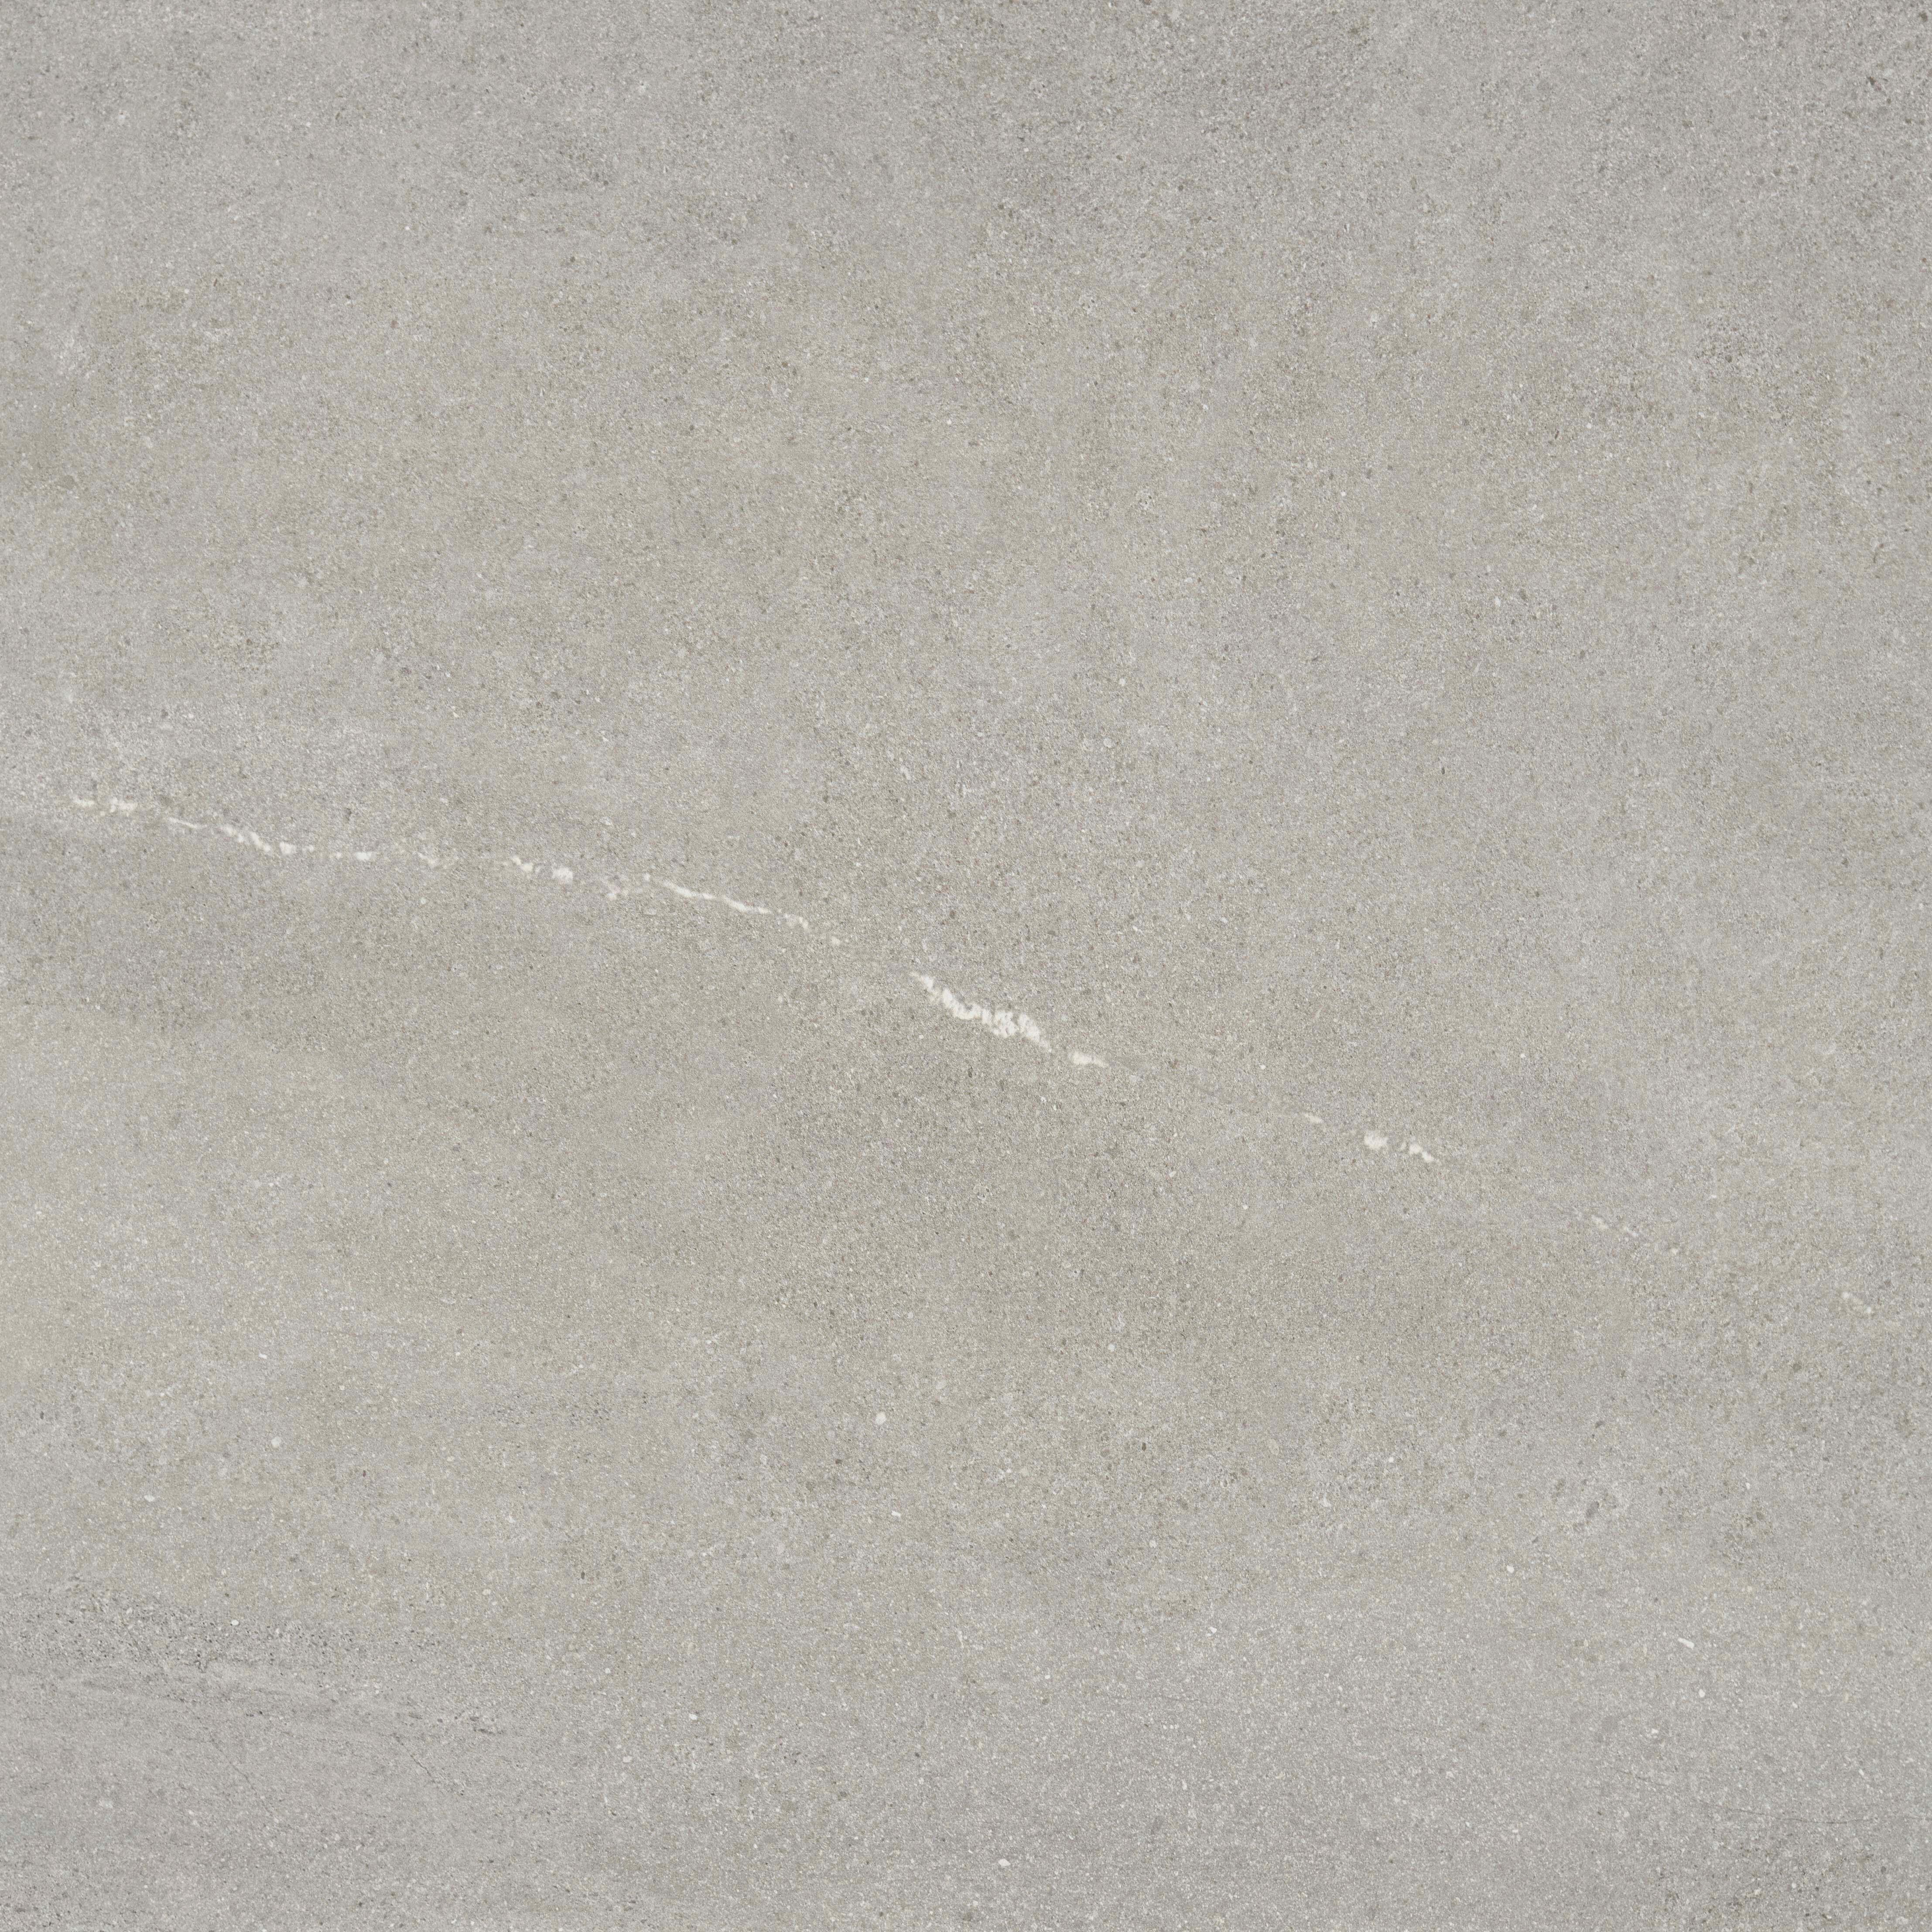 Suelo porcelánico pulse efecto piedra grey 59.5x59.5 cm c3